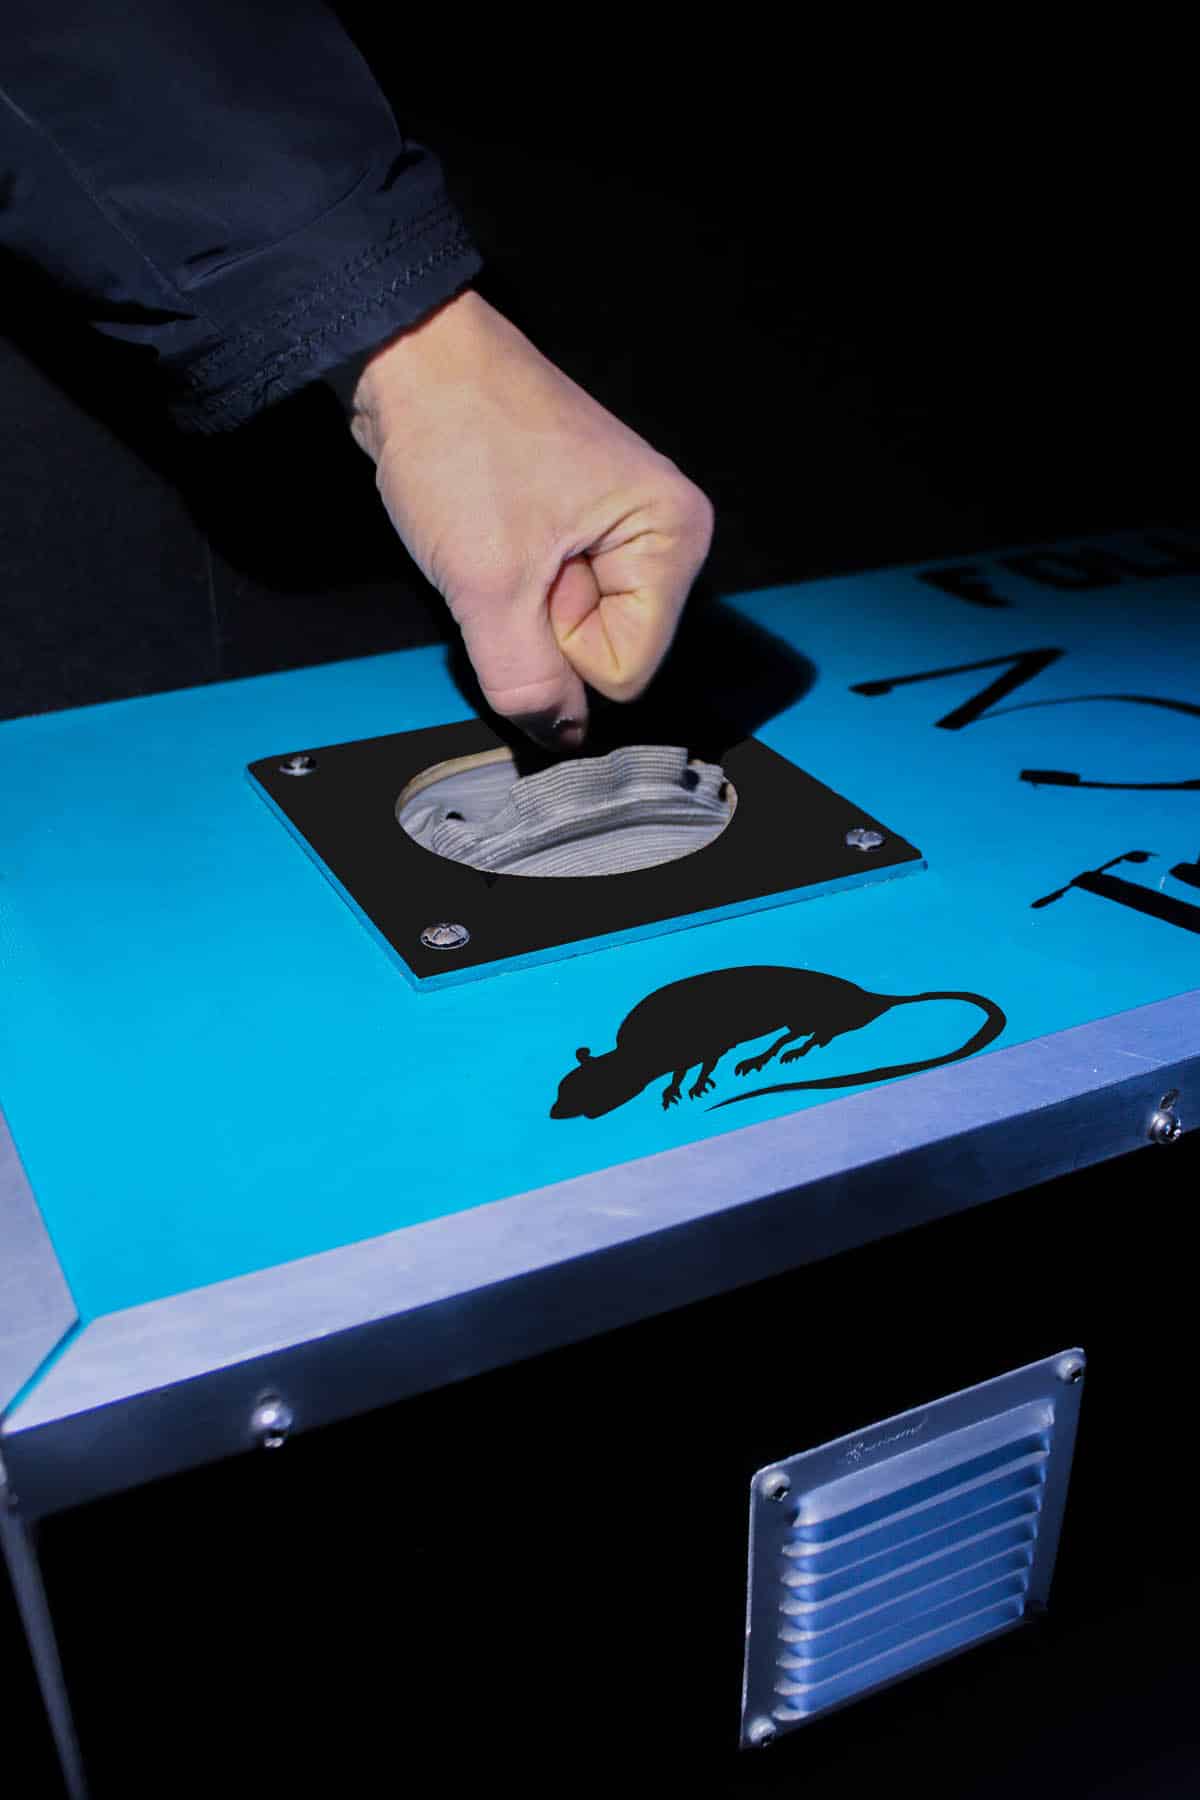 Un joueur s'apprête à plonger sa main dans une caisse fermée portant une signalisation "Danger RATS !" durant un Escape Game